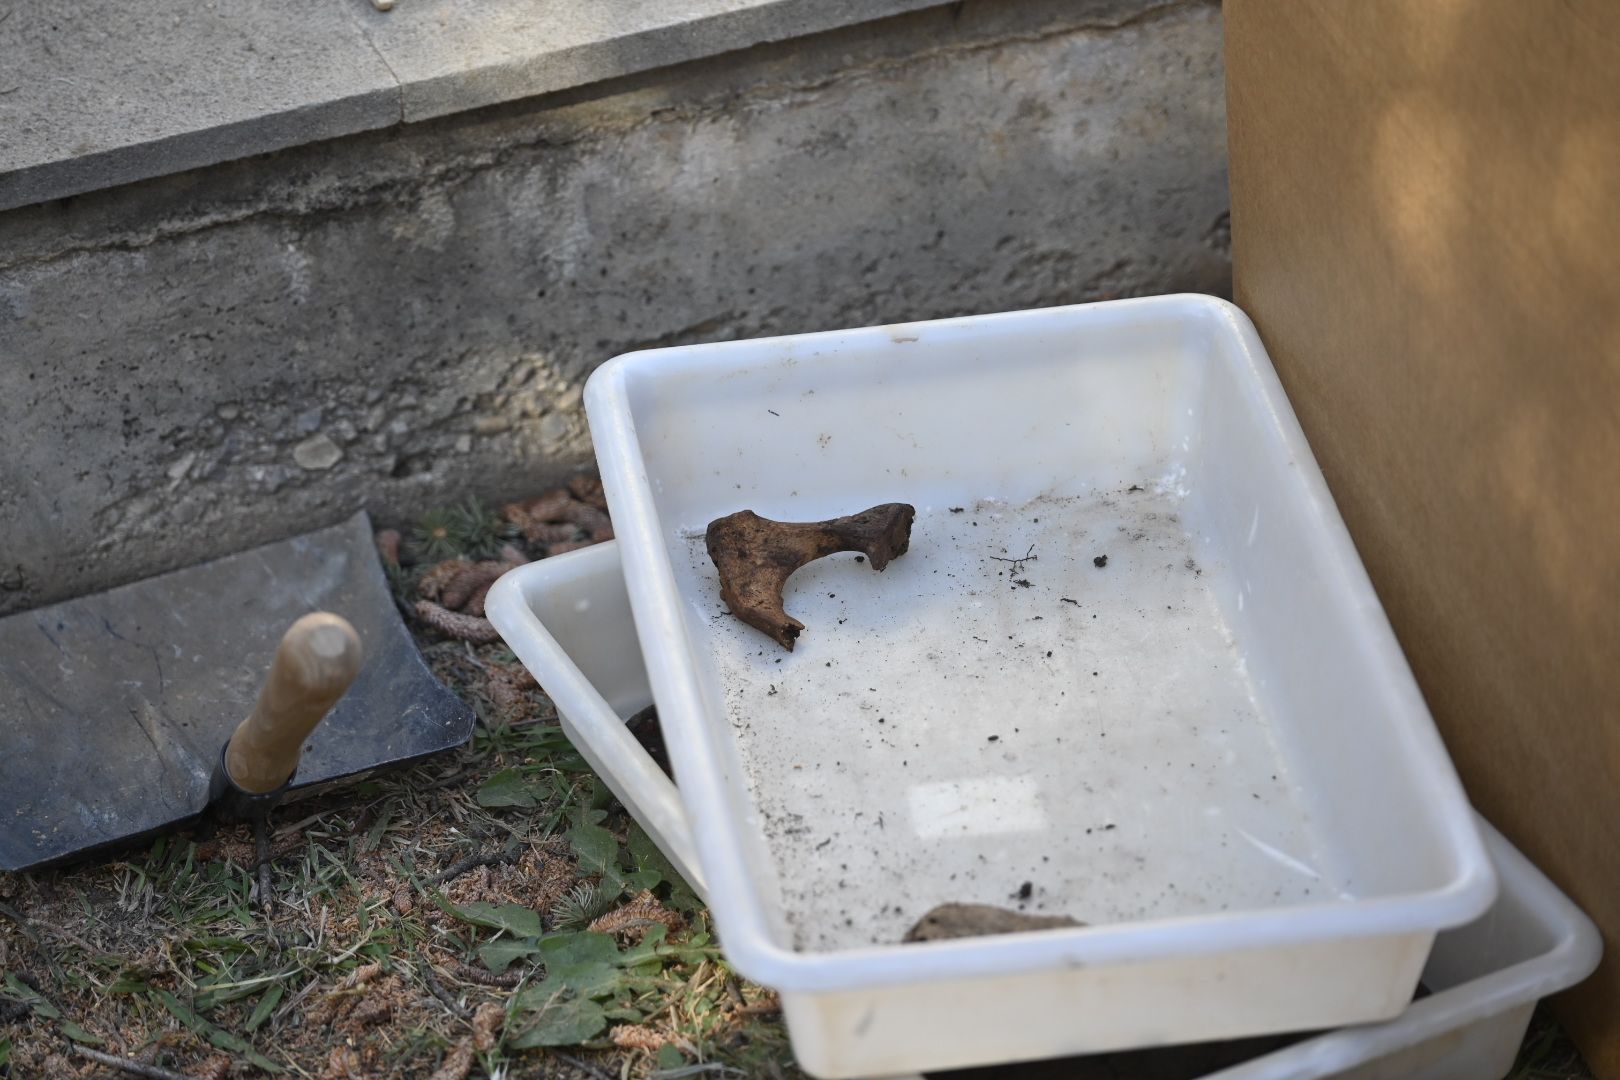 Vila-real exhuma la cripta del cementerio en busca de José Pla, asesinado por el franquismo